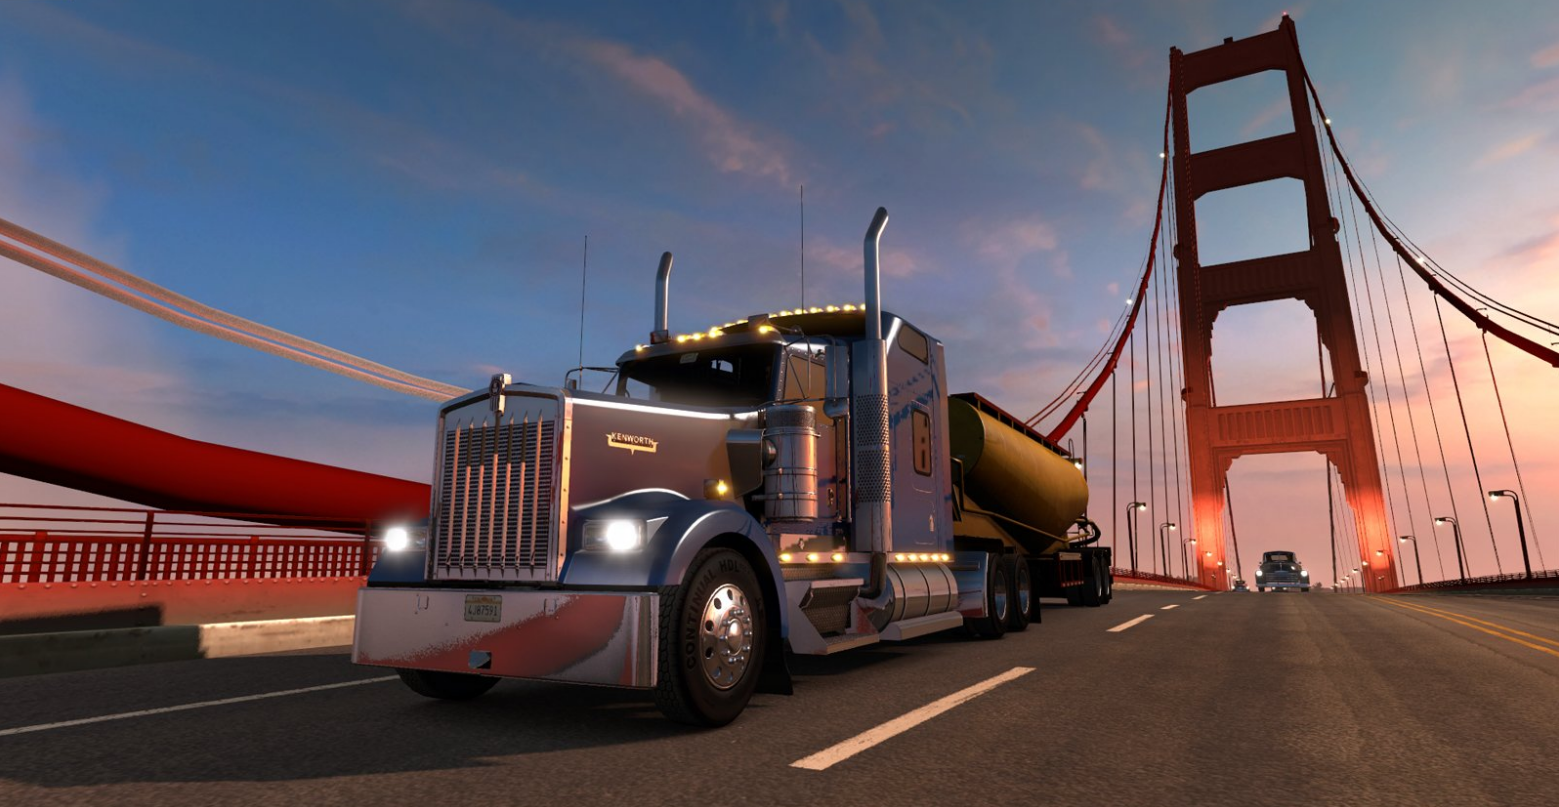 Imagem do jogo American Truck Simulator, que simula a indústria de transporte dos EUA